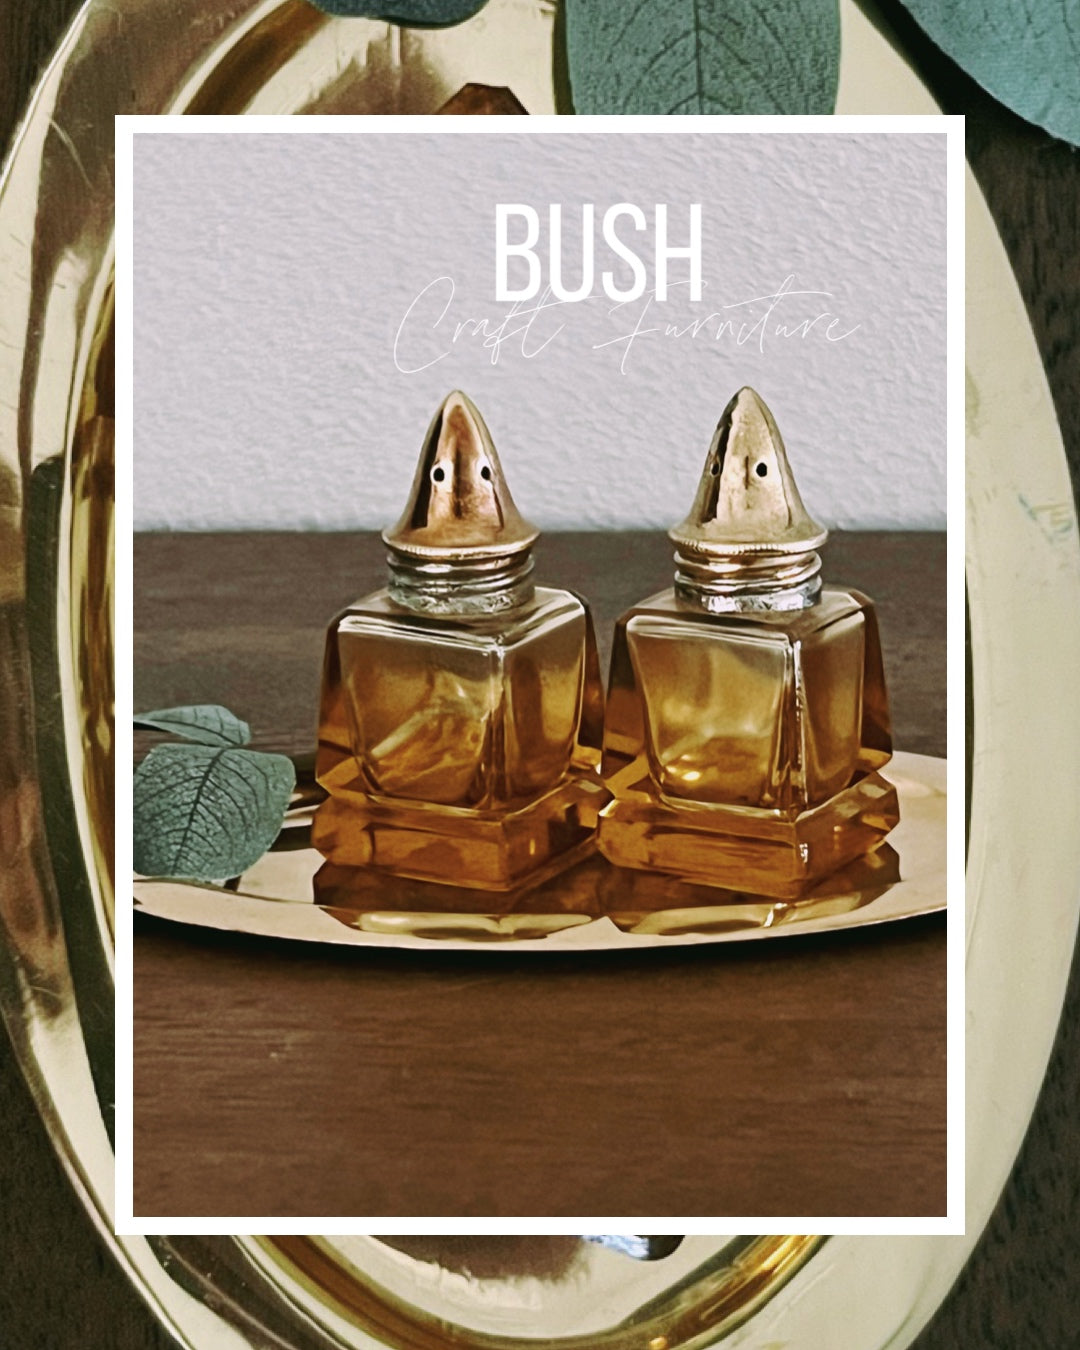 Vintage Amber Glass salt & pepper shakers - Bush Craft Furniture